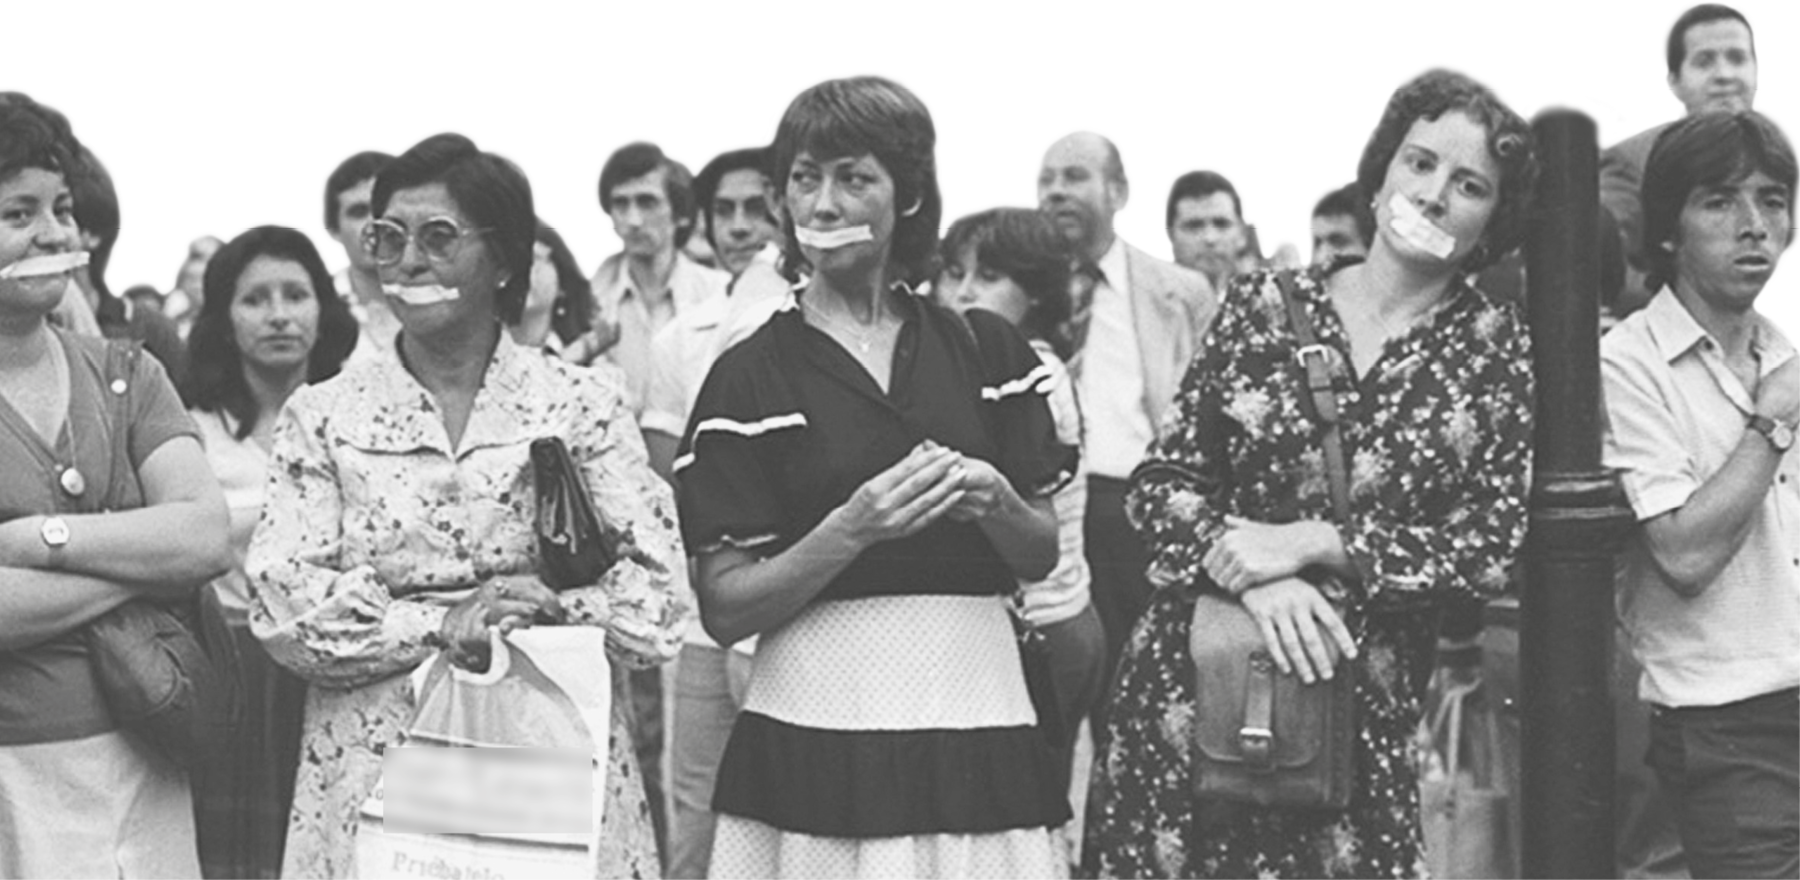 Fotografia em preto e branco. Grupo de pessoas reunidas em um protesto. As mulheres à frente têm uma fita sobre a boca.